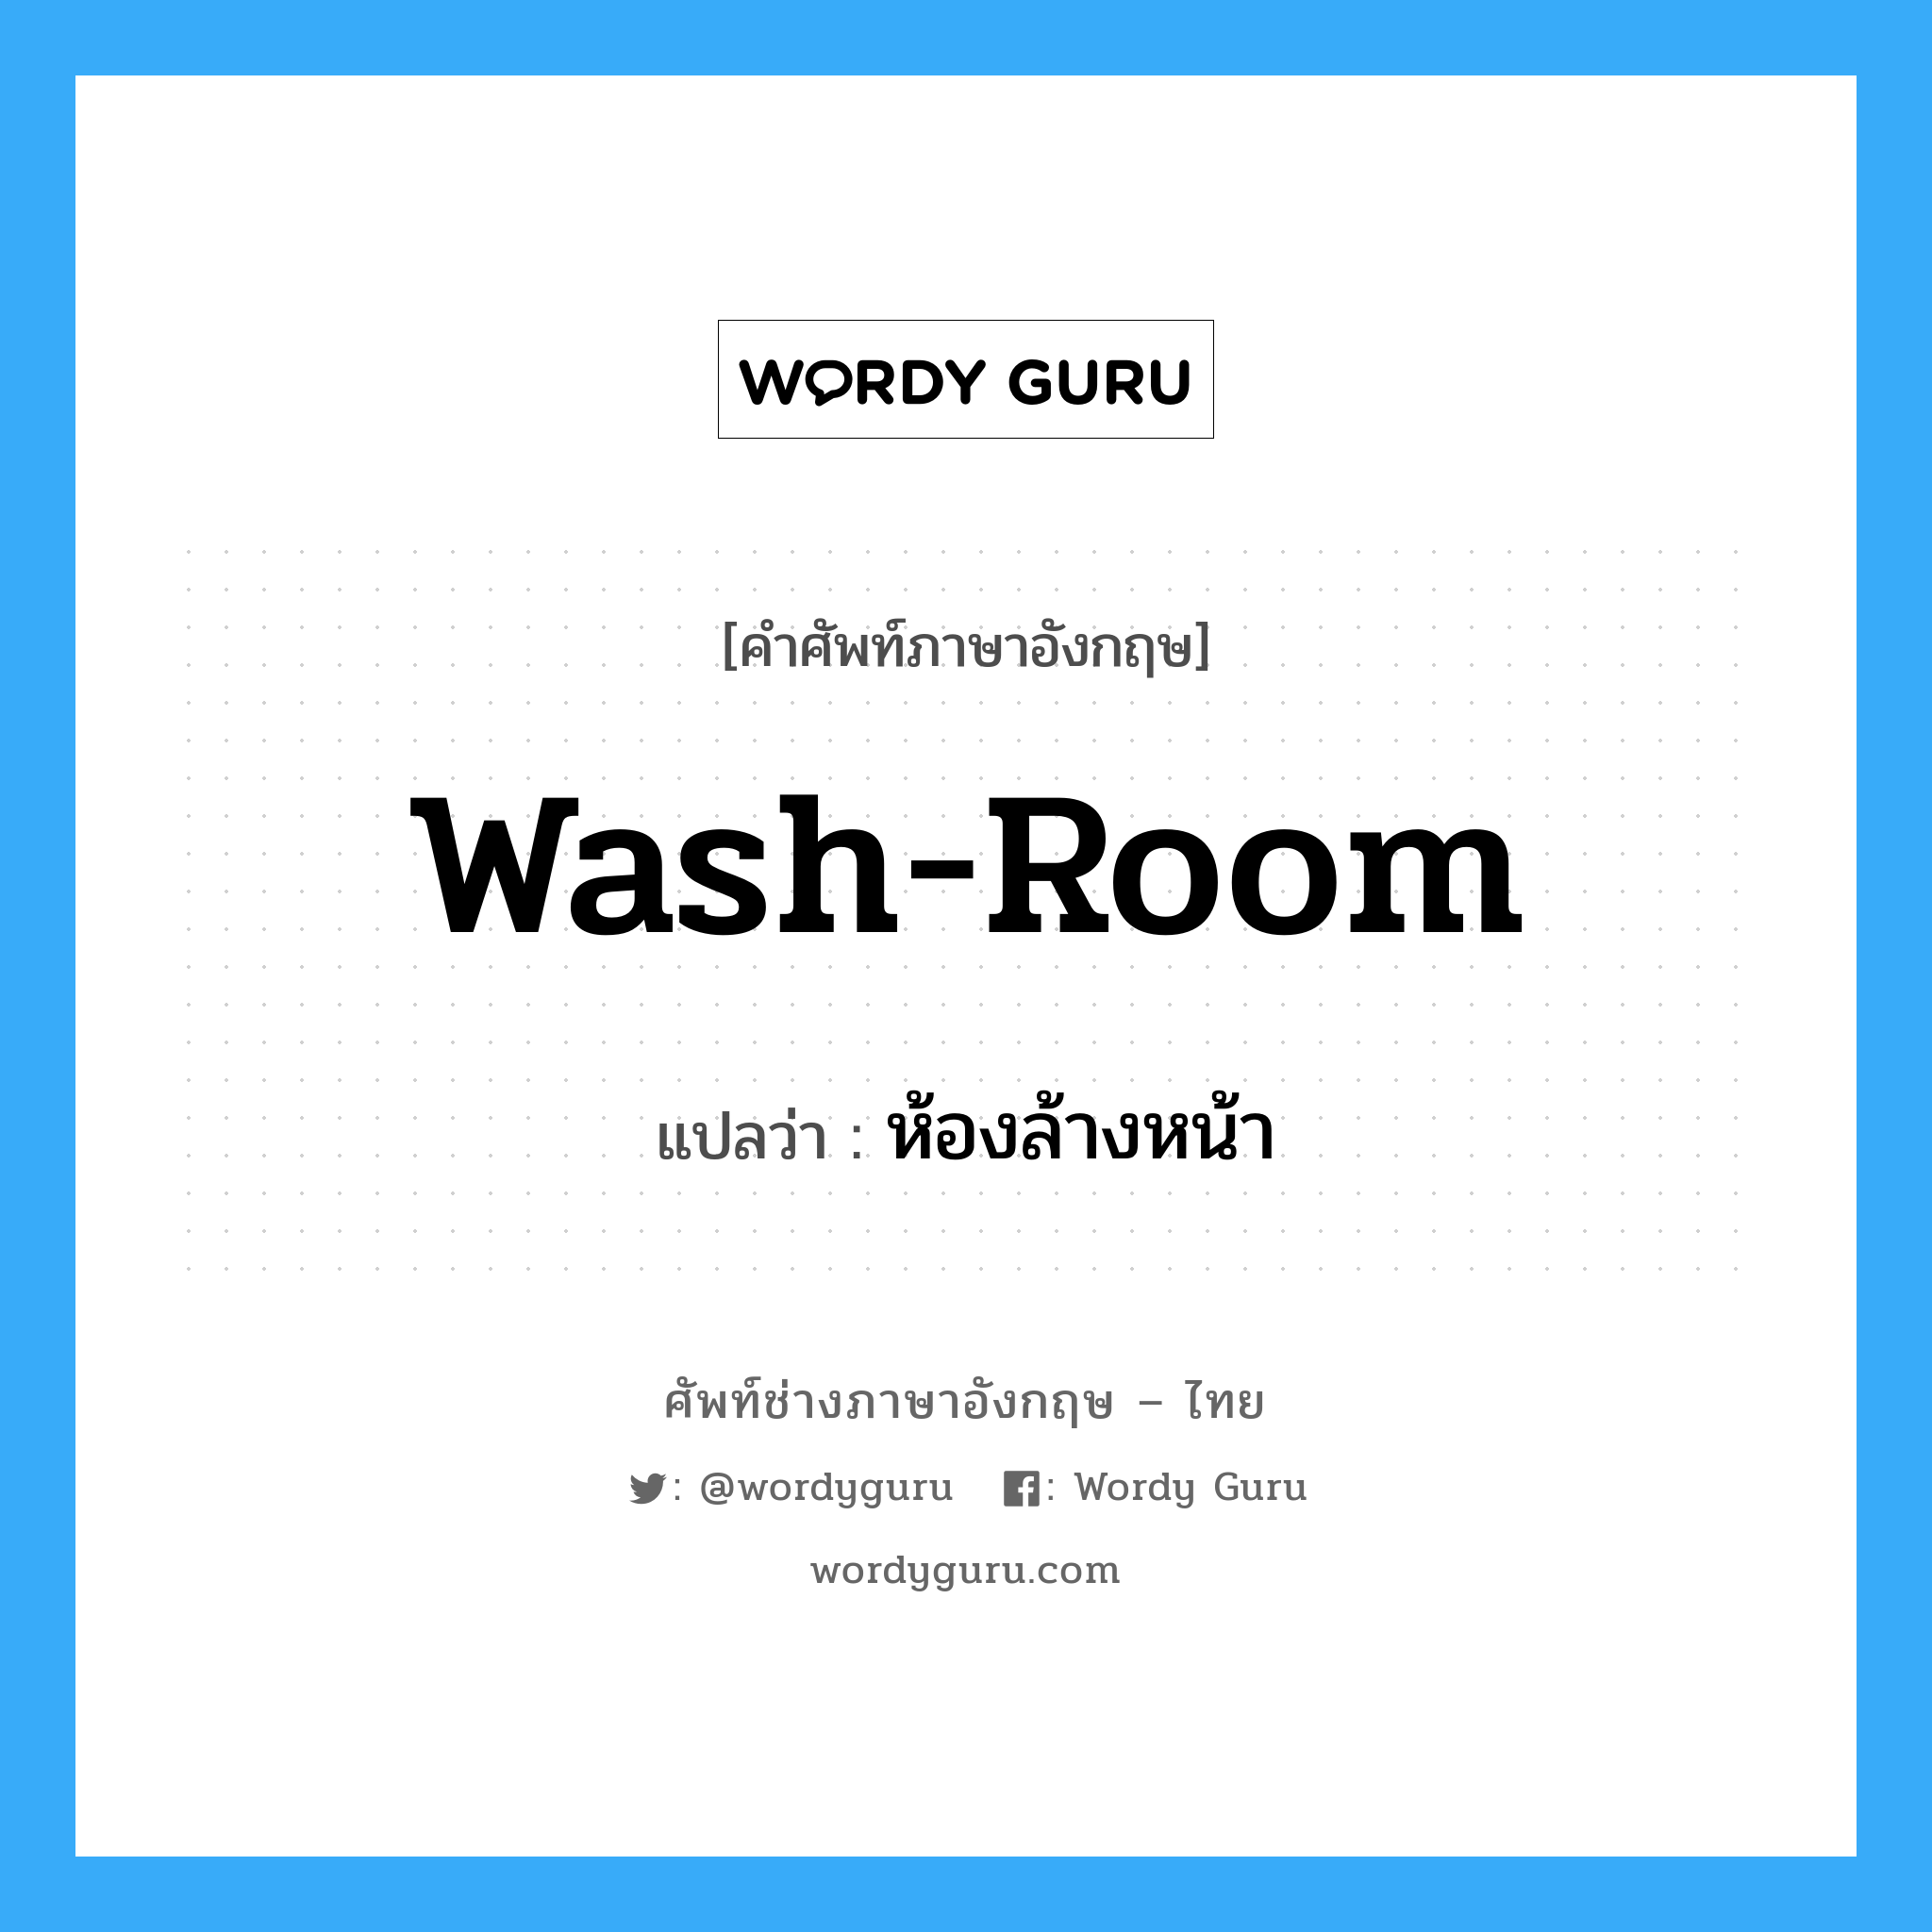 ห้องล้างหน้า ภาษาอังกฤษ?, คำศัพท์ช่างภาษาอังกฤษ - ไทย ห้องล้างหน้า คำศัพท์ภาษาอังกฤษ ห้องล้างหน้า แปลว่า wash-room